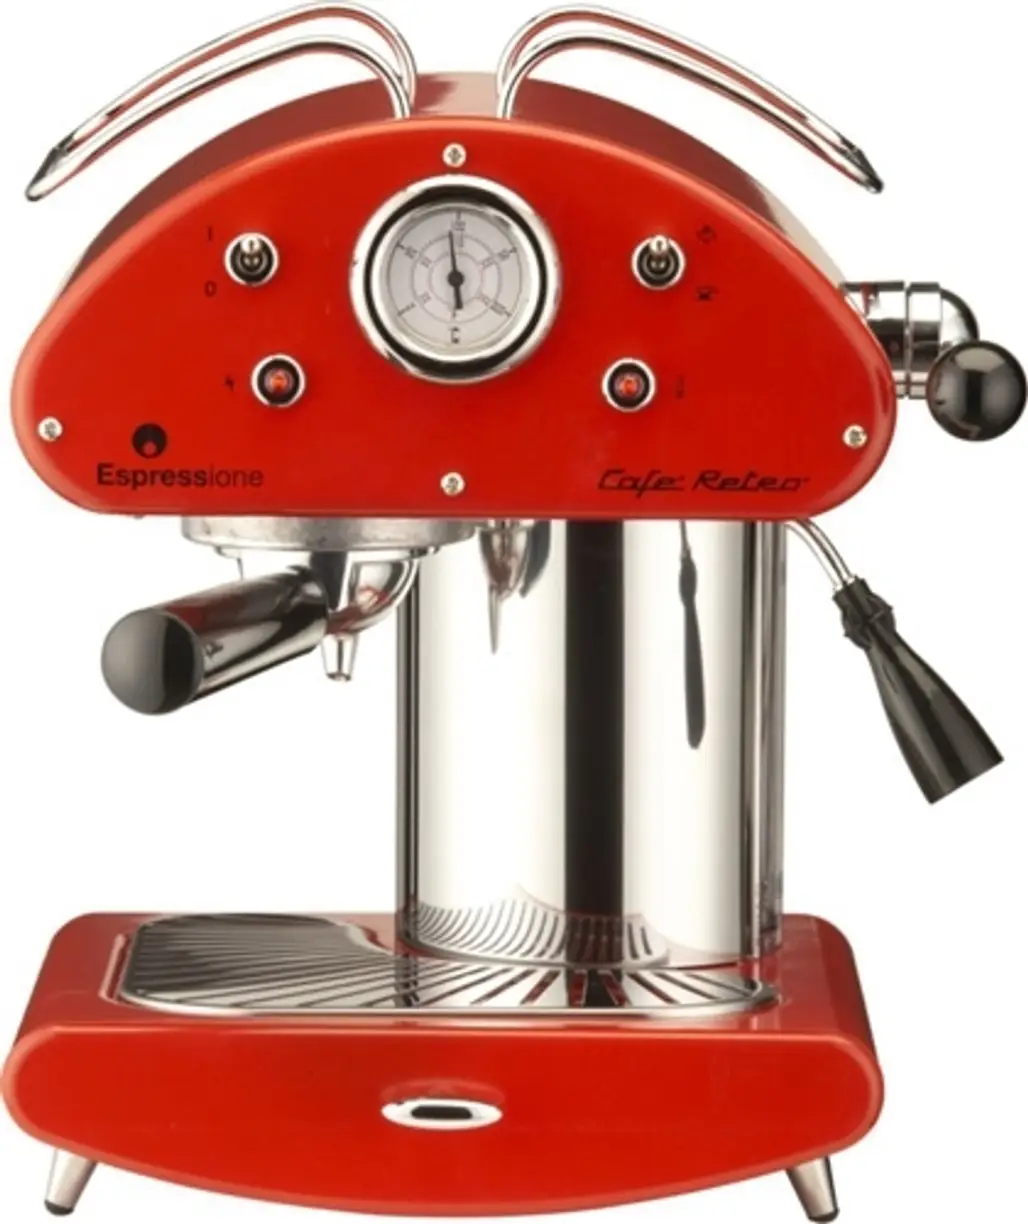 Café Retro Espressione Machine